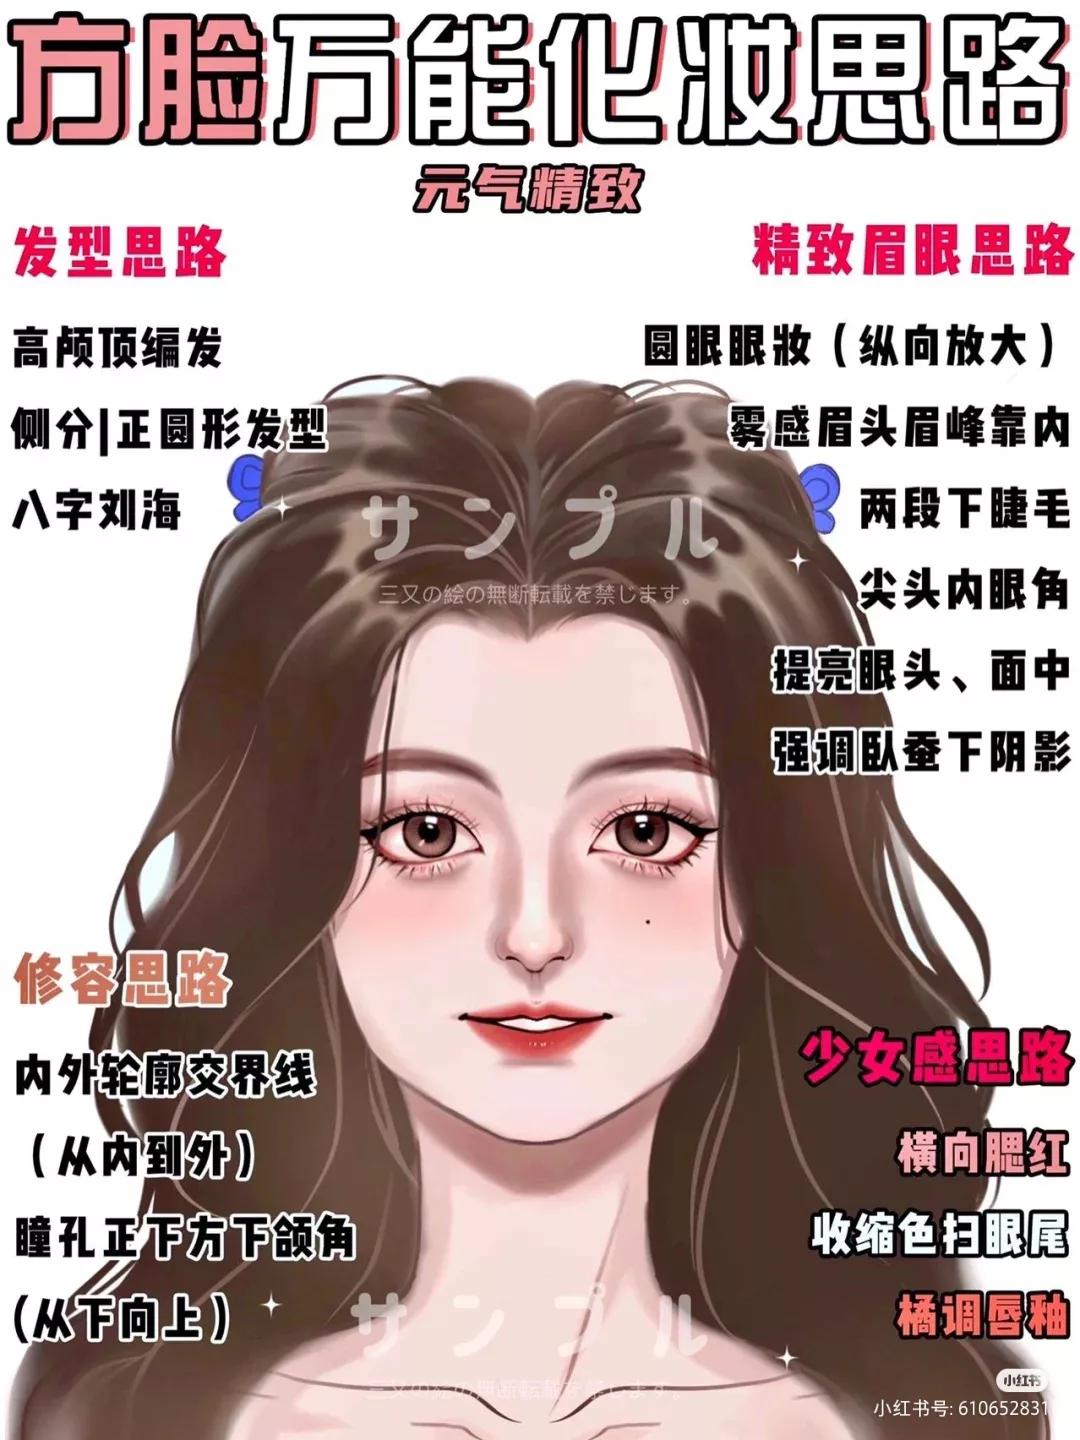 小红书发型推荐 根据脸型设计发型 快来看看你适合什么样的发型叭